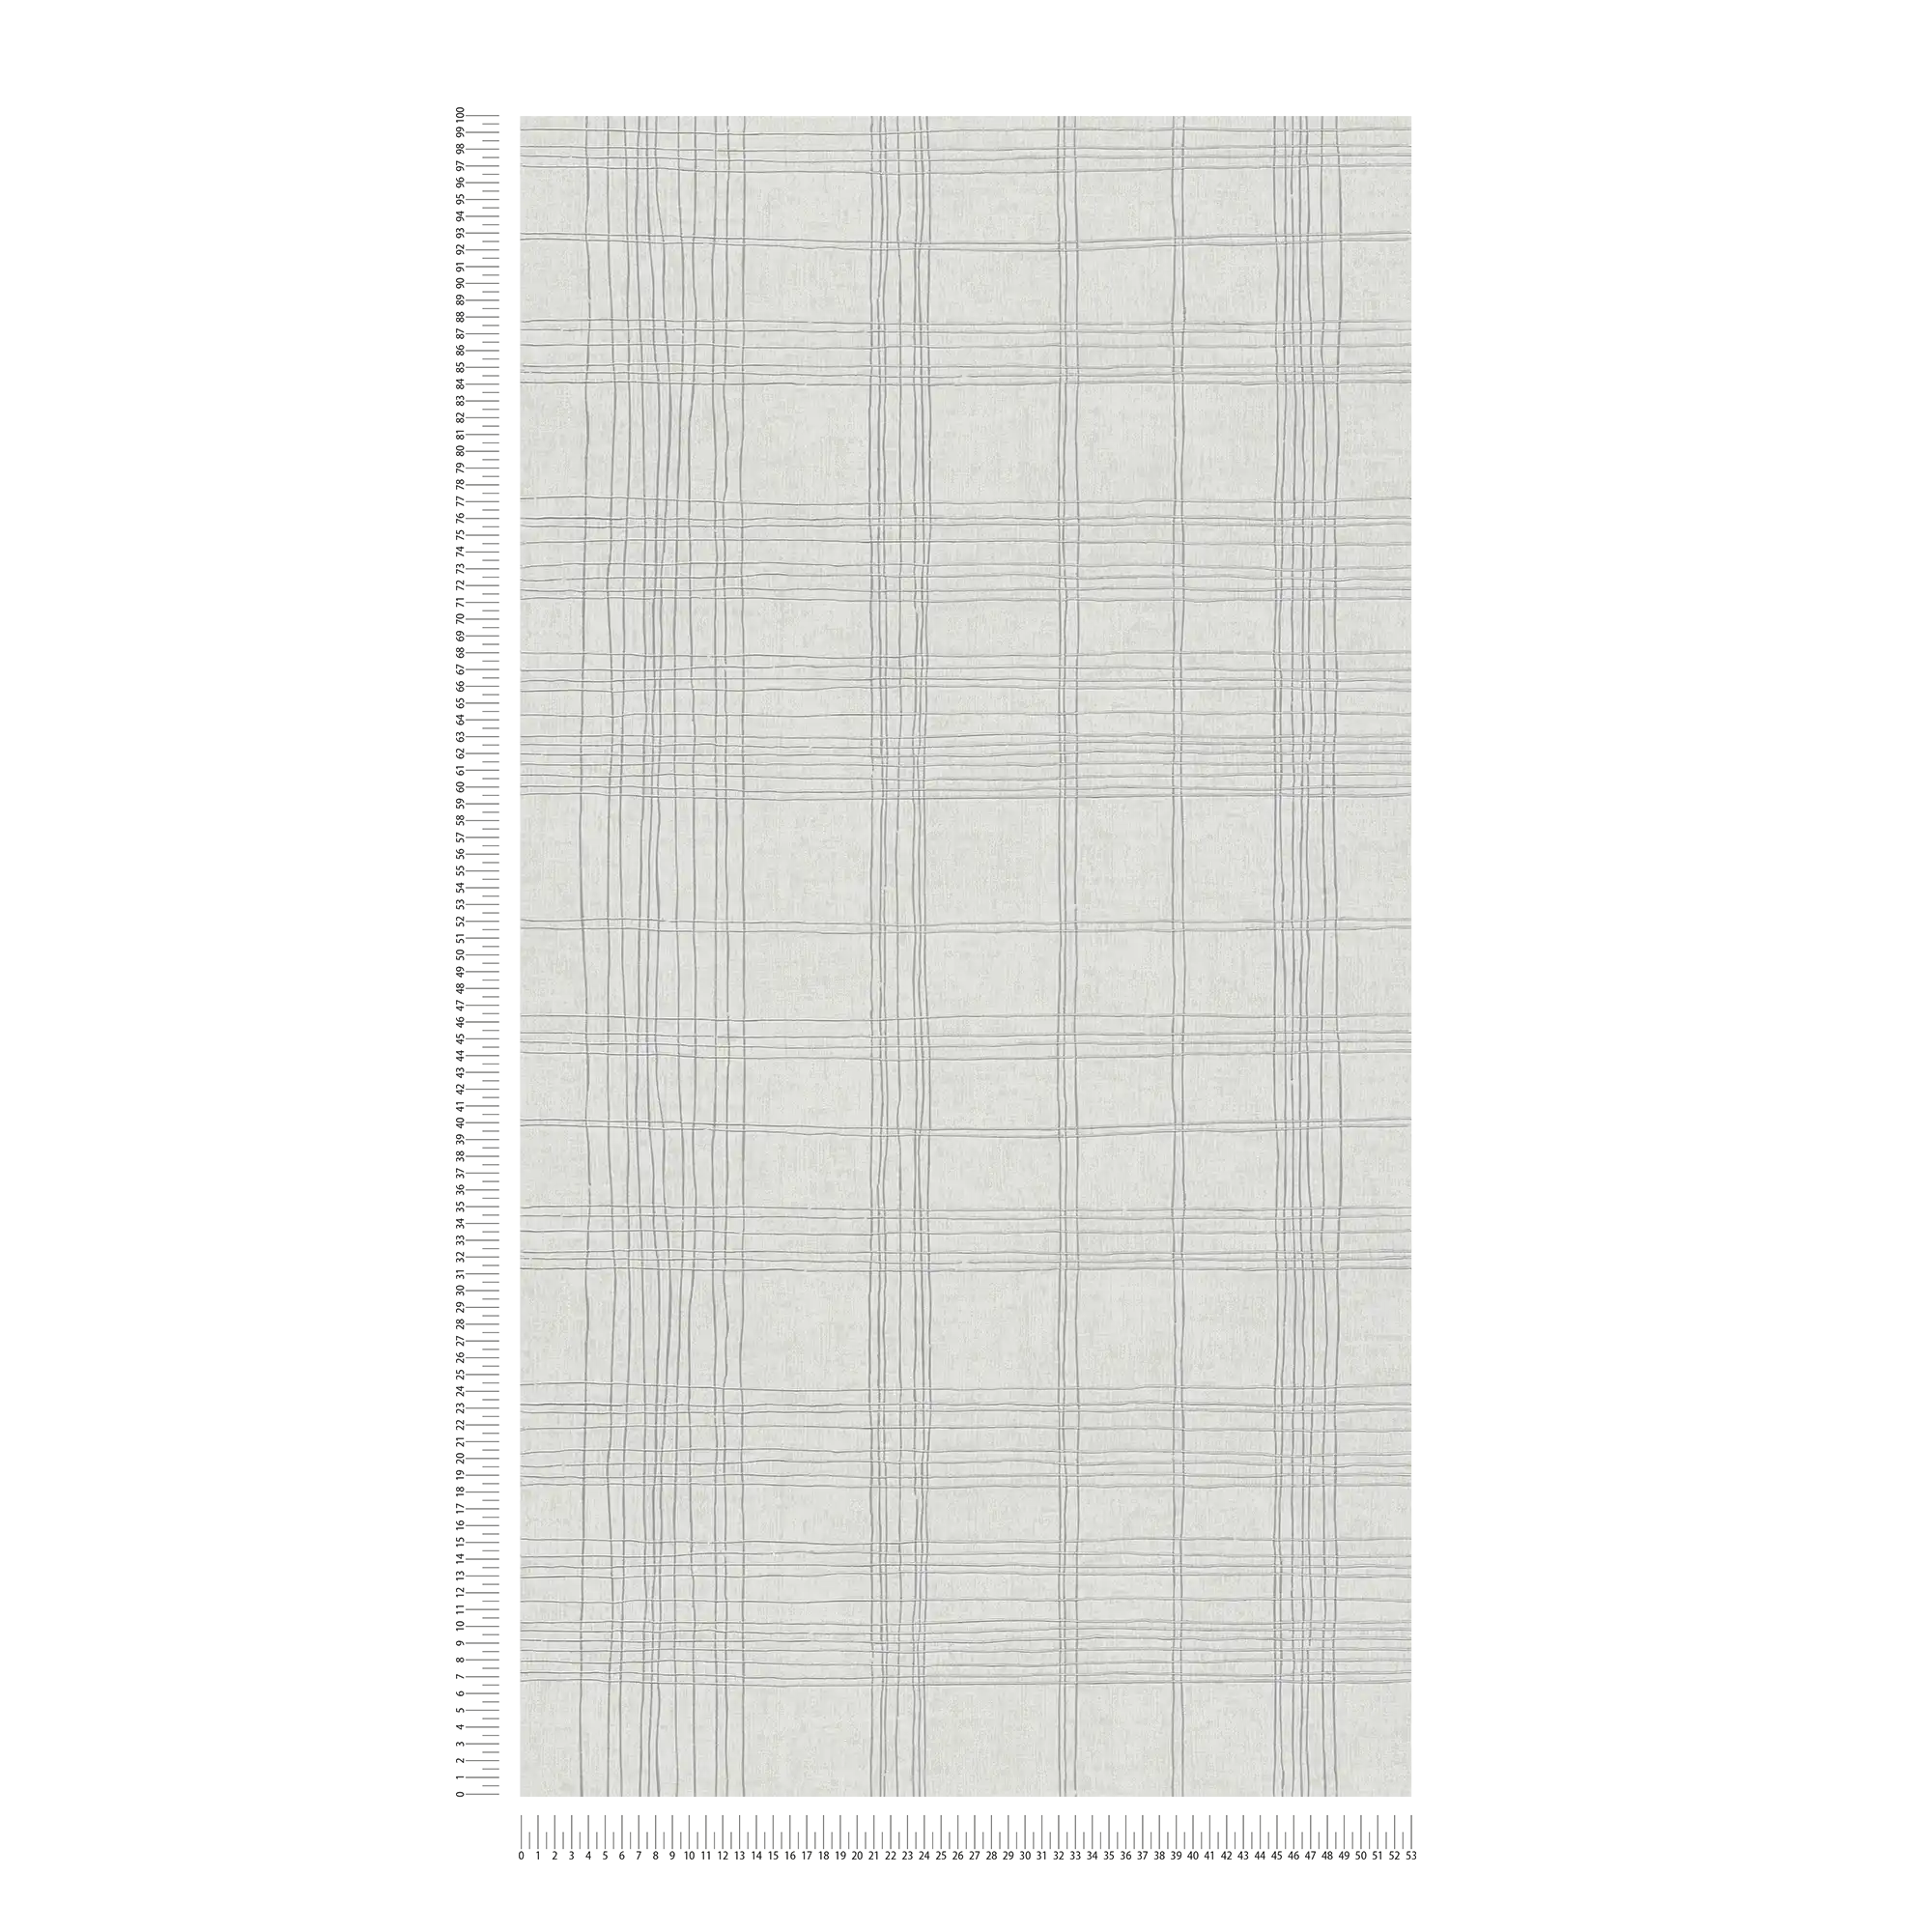             Gevoerd vliesbehang met metallic effect en ruitpatroon - grijs, metallic, wit
        